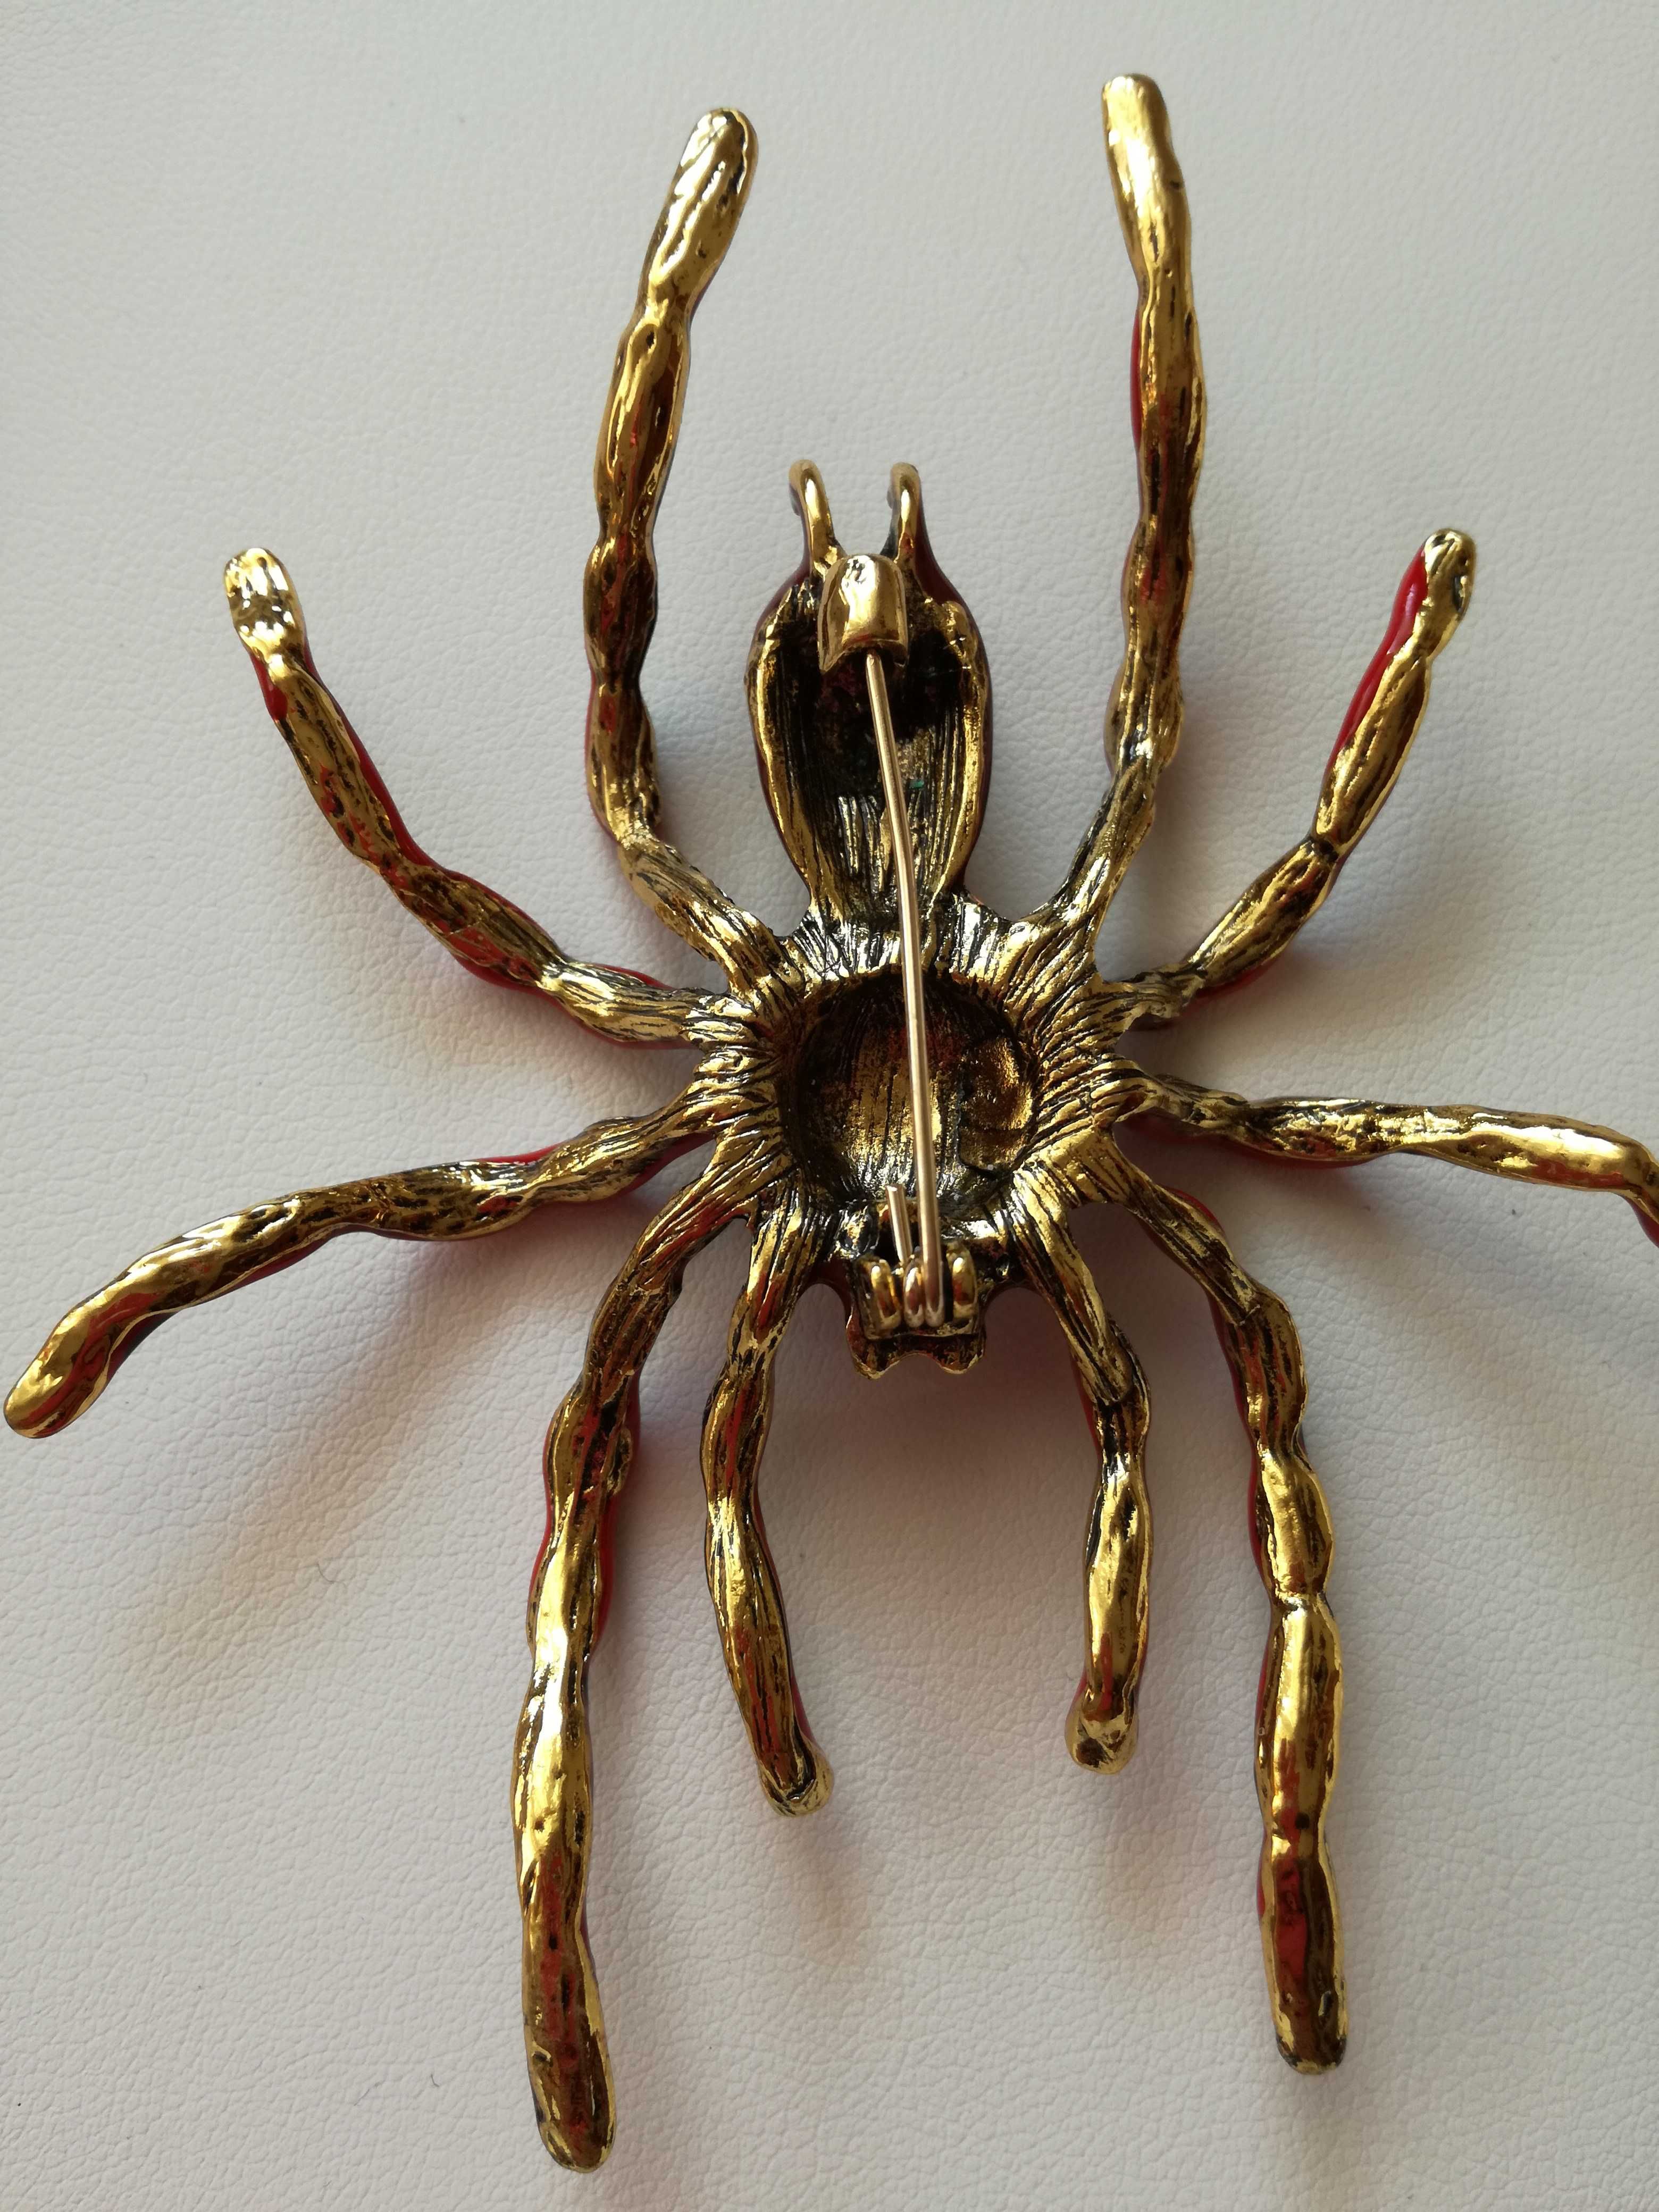 USA_BROSZKA/ZAWIESZKA_nieszablonowa biżuteria- mega pająk czerwony